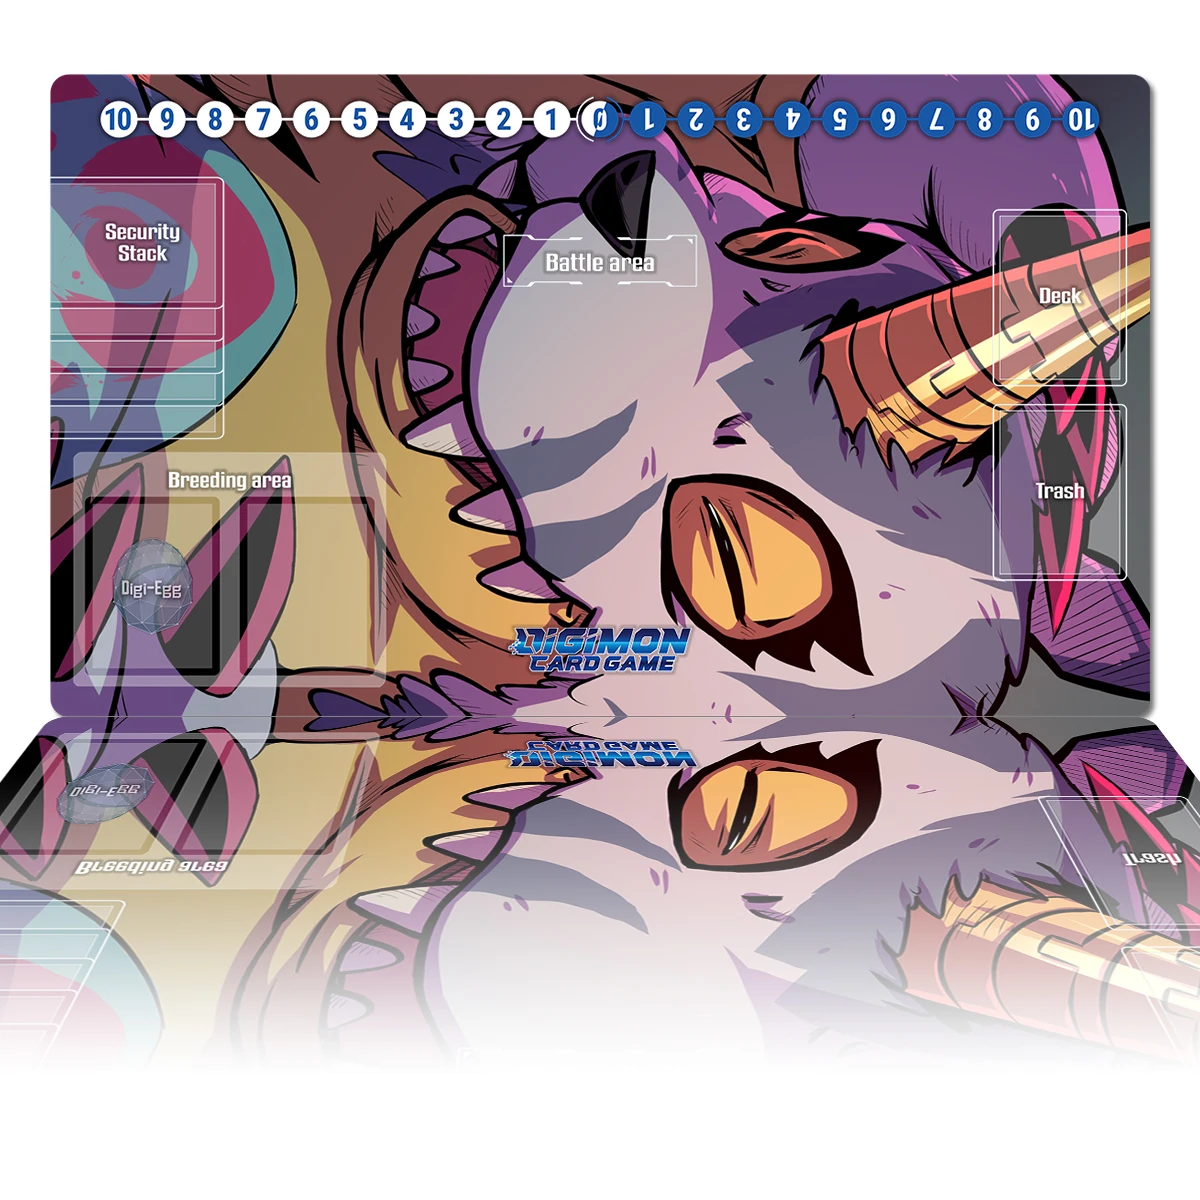 

Игровой коврик Digimon Gabumon DTCG TCG, Настольная резиновая подставка для мыши, для настольных игр, для поединок, торговых карт